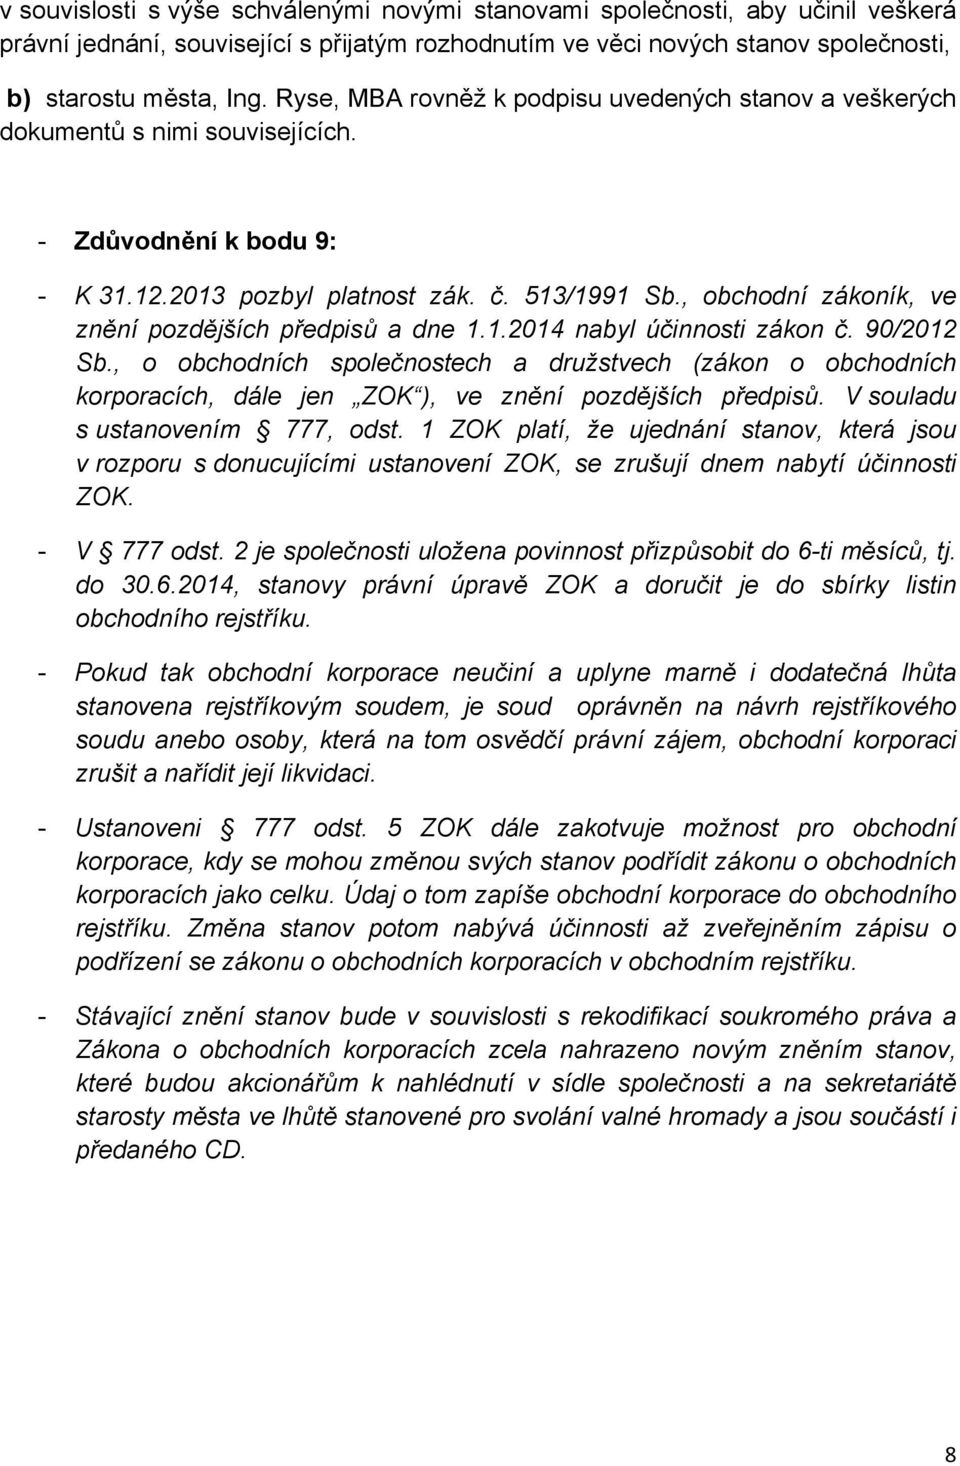 , obchodní zákoník, ve znění pozdějších předpisů a dne 1.1.2014 nabyl účinnosti zákon č. 90/2012 Sb.